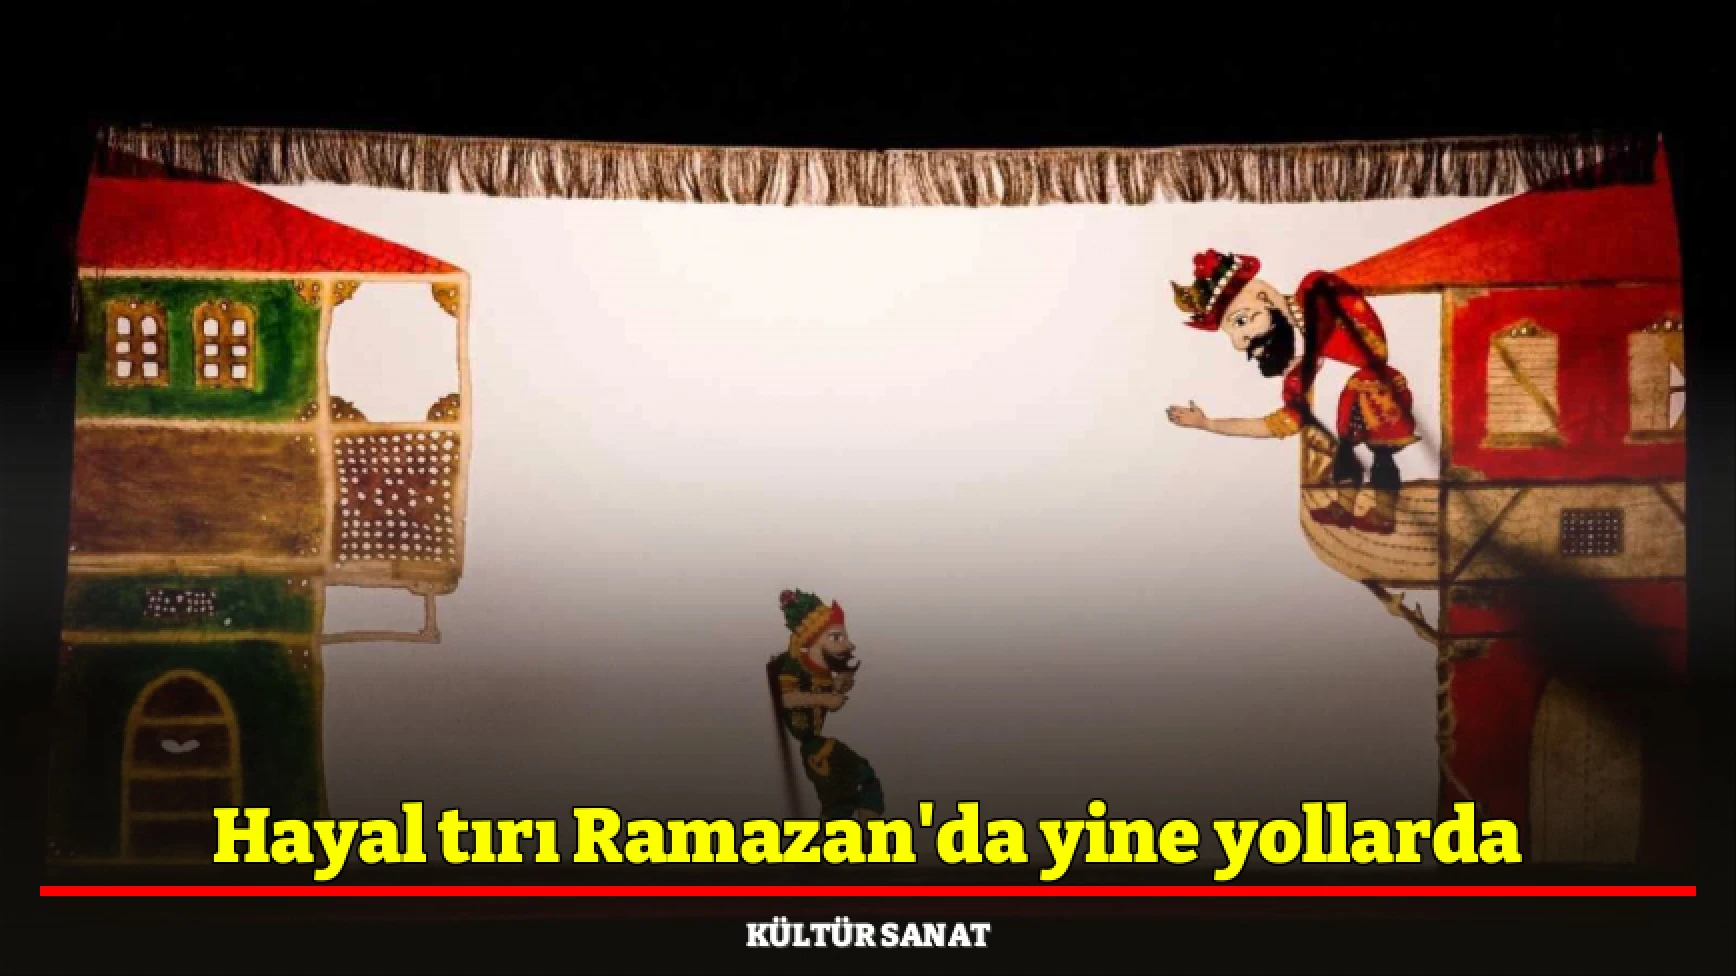 Hayal tırı Ramazan'da yine yollarda